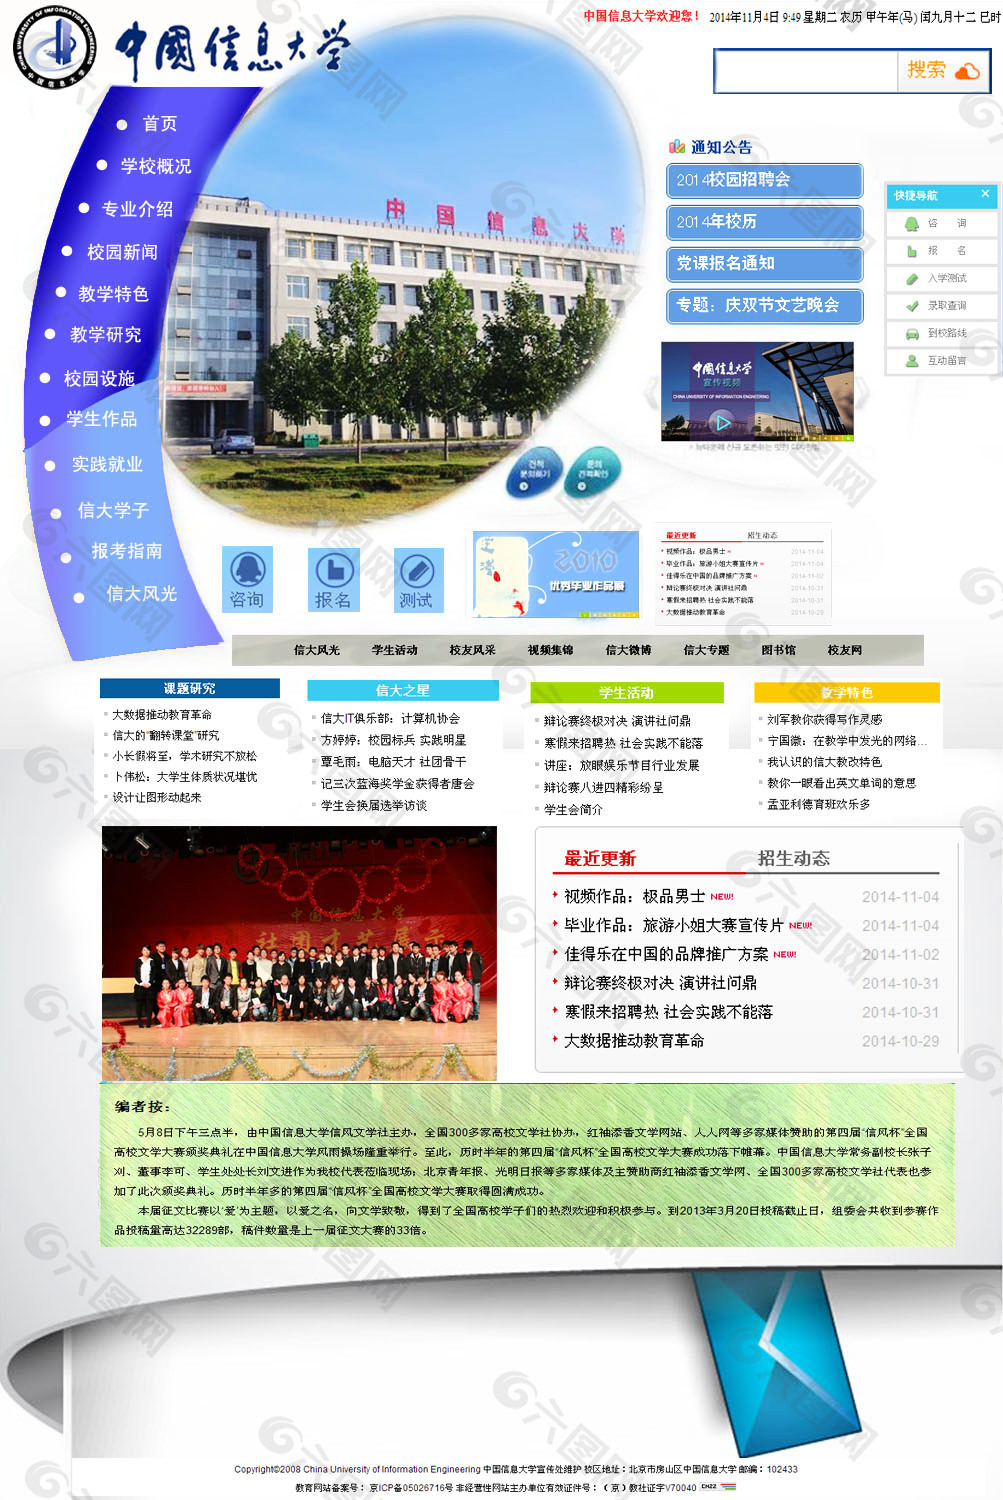 中国信息大学网站设计原稿平面作图设计SY